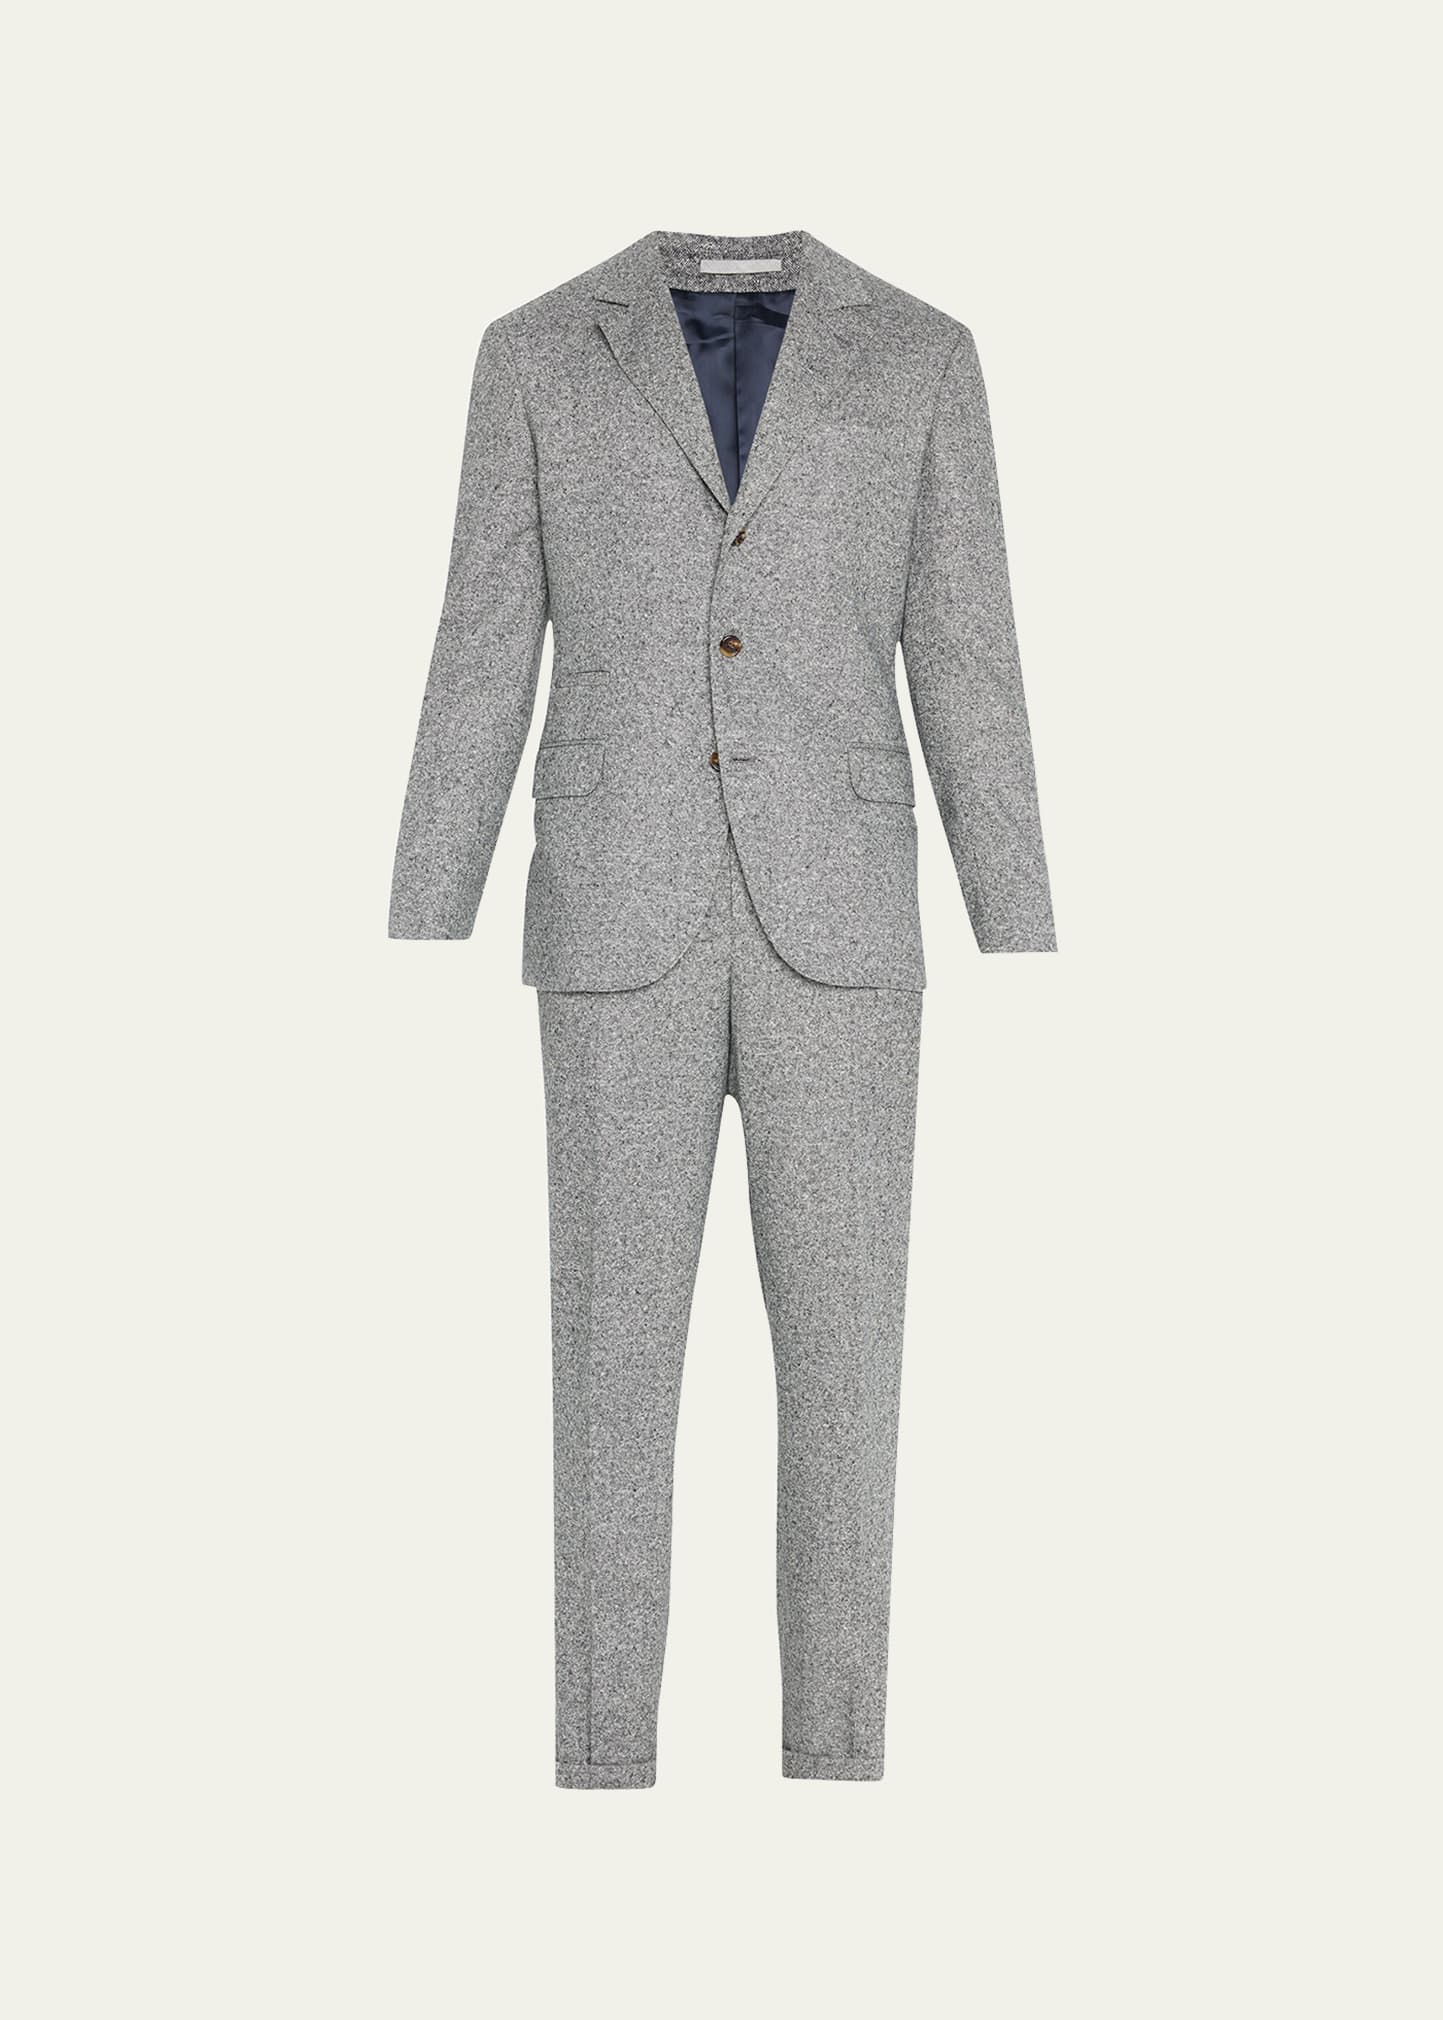 Brunello Cucinelli Men's Wool-Cashmere Two-Piece Suit